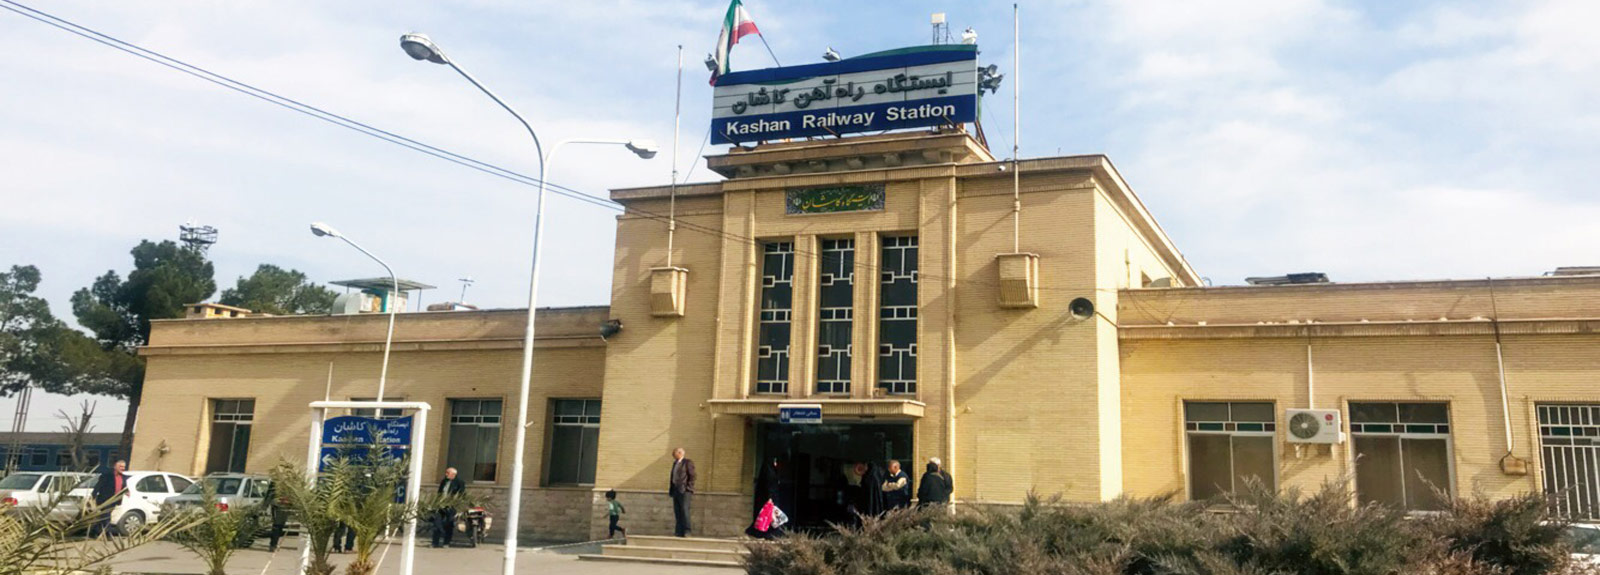 Kashan railway station (Kashan train station)